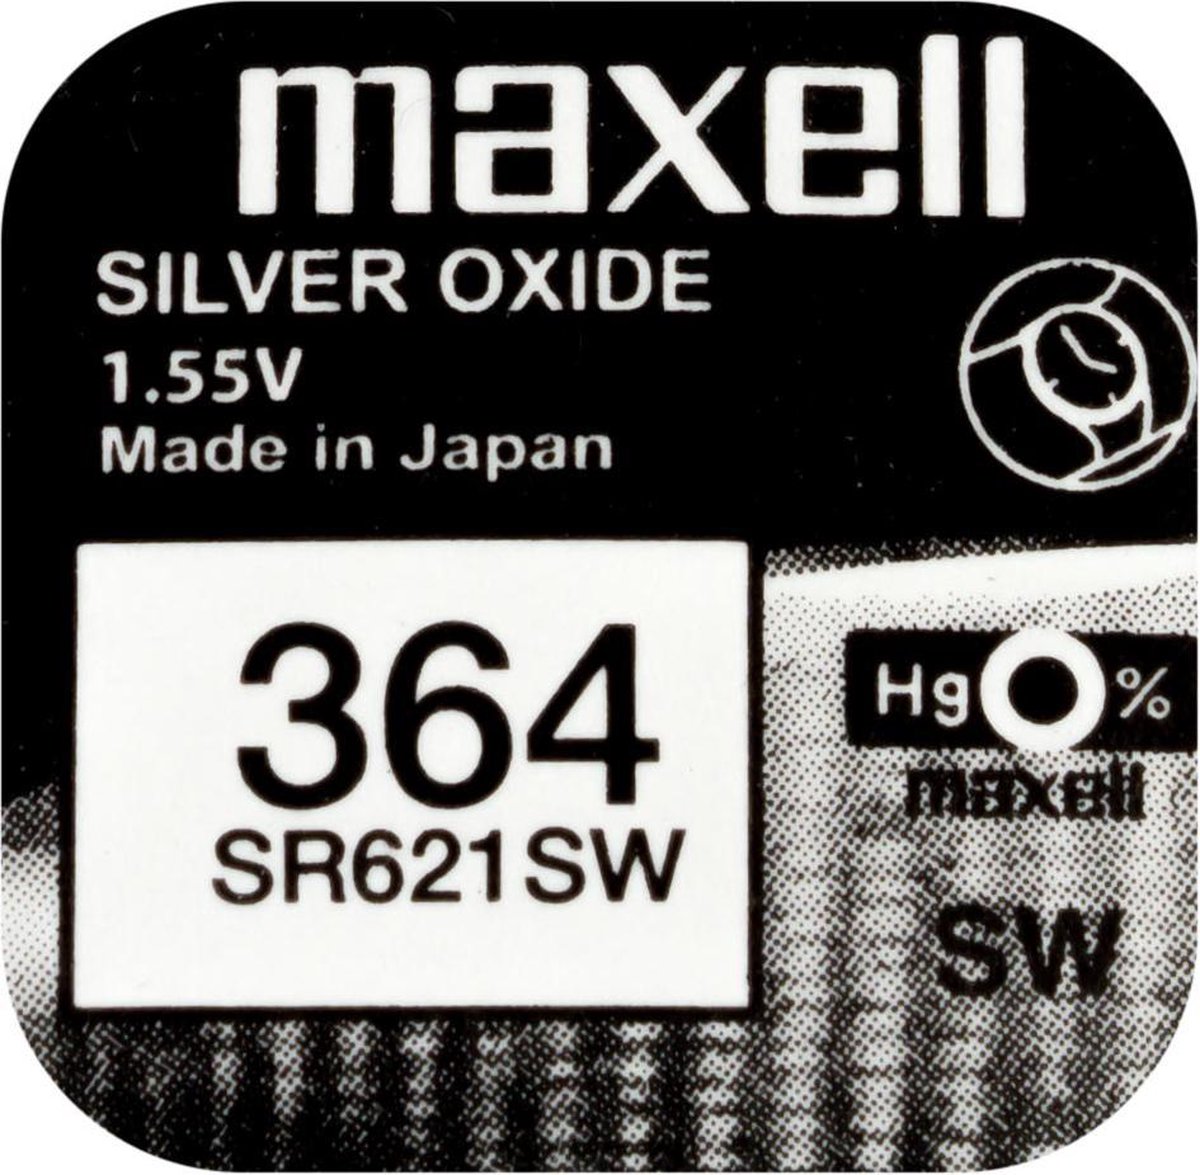 MAXELL 364 / SR621SW zilveroxide knoopcel horlogebatterij 2(twee) stuks - Maxell